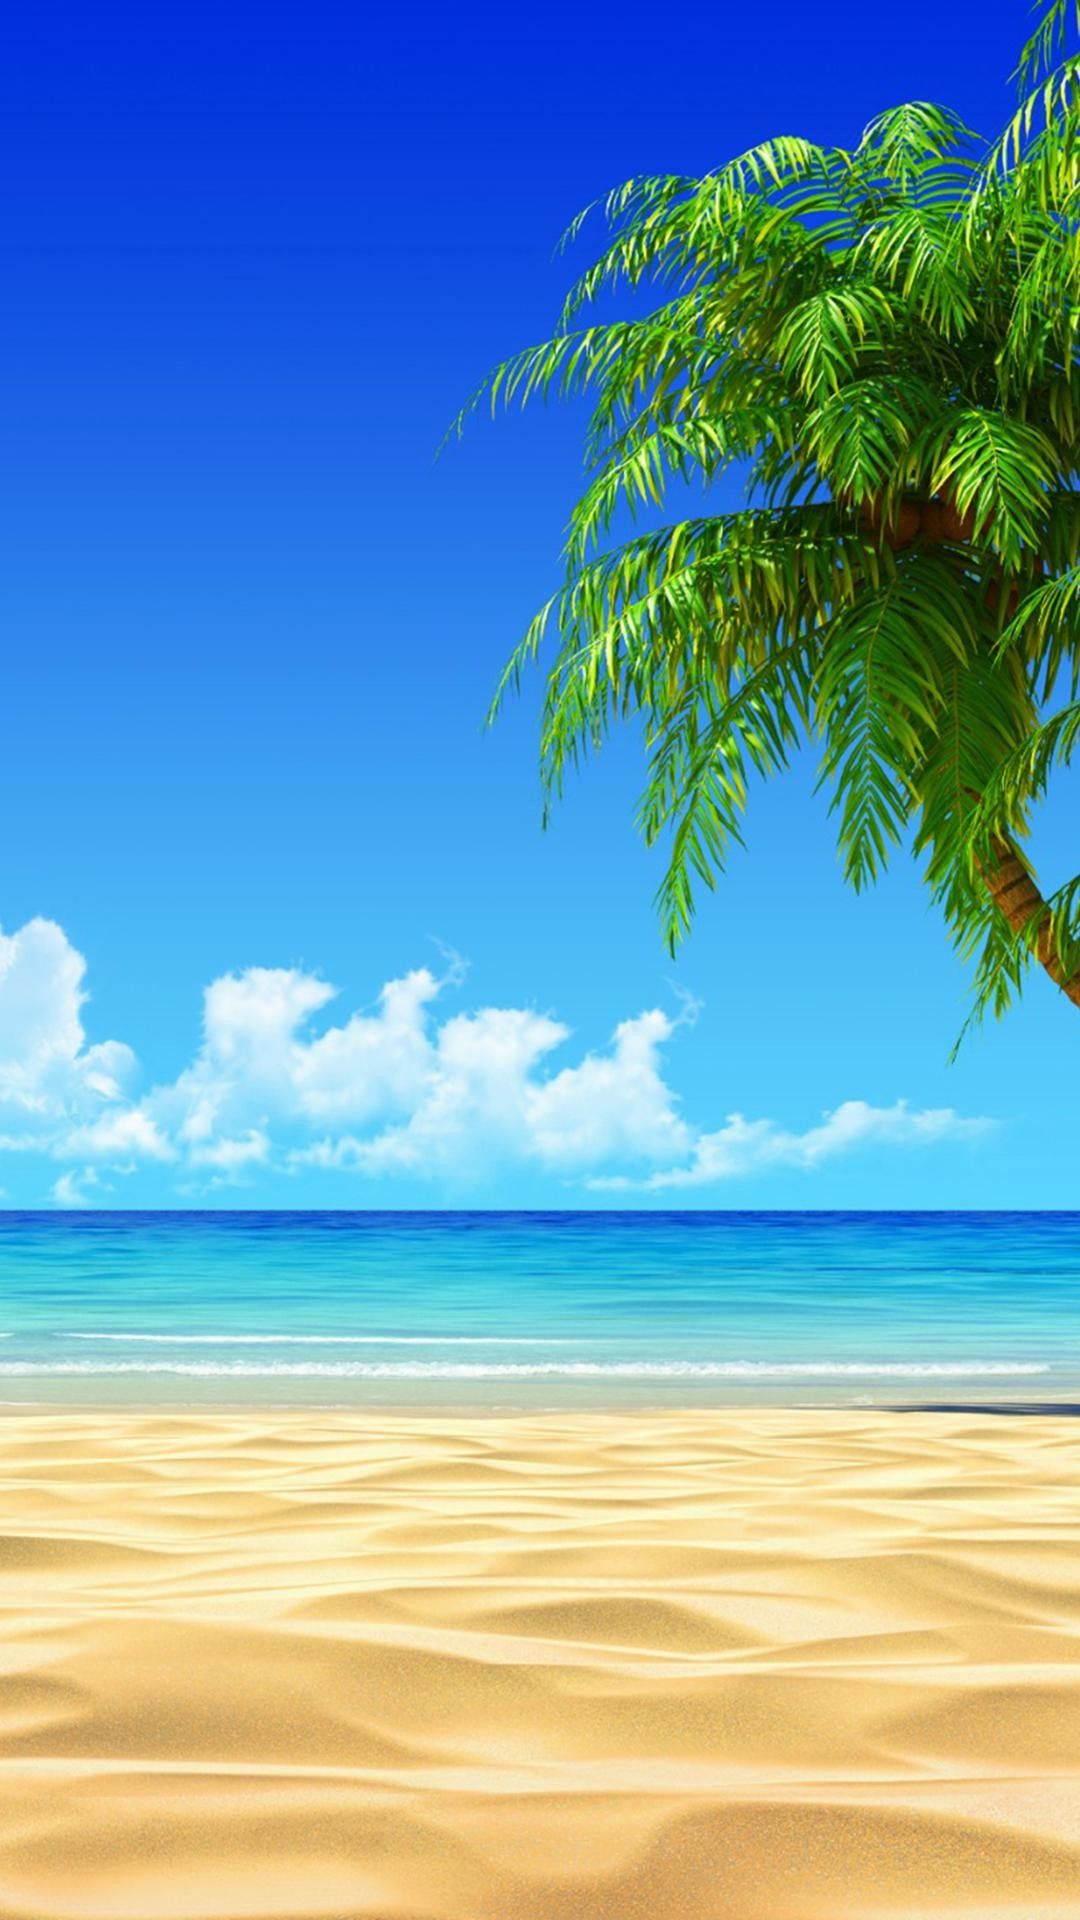 Hình nền bãi biển cho iPhone là điều cần thiết để tạo ra một không gian rộng lớn và mở mắt. Bức ảnh này giúp bạn cảm nhận được sự thoải mái và yên tĩnh của đại dương. 